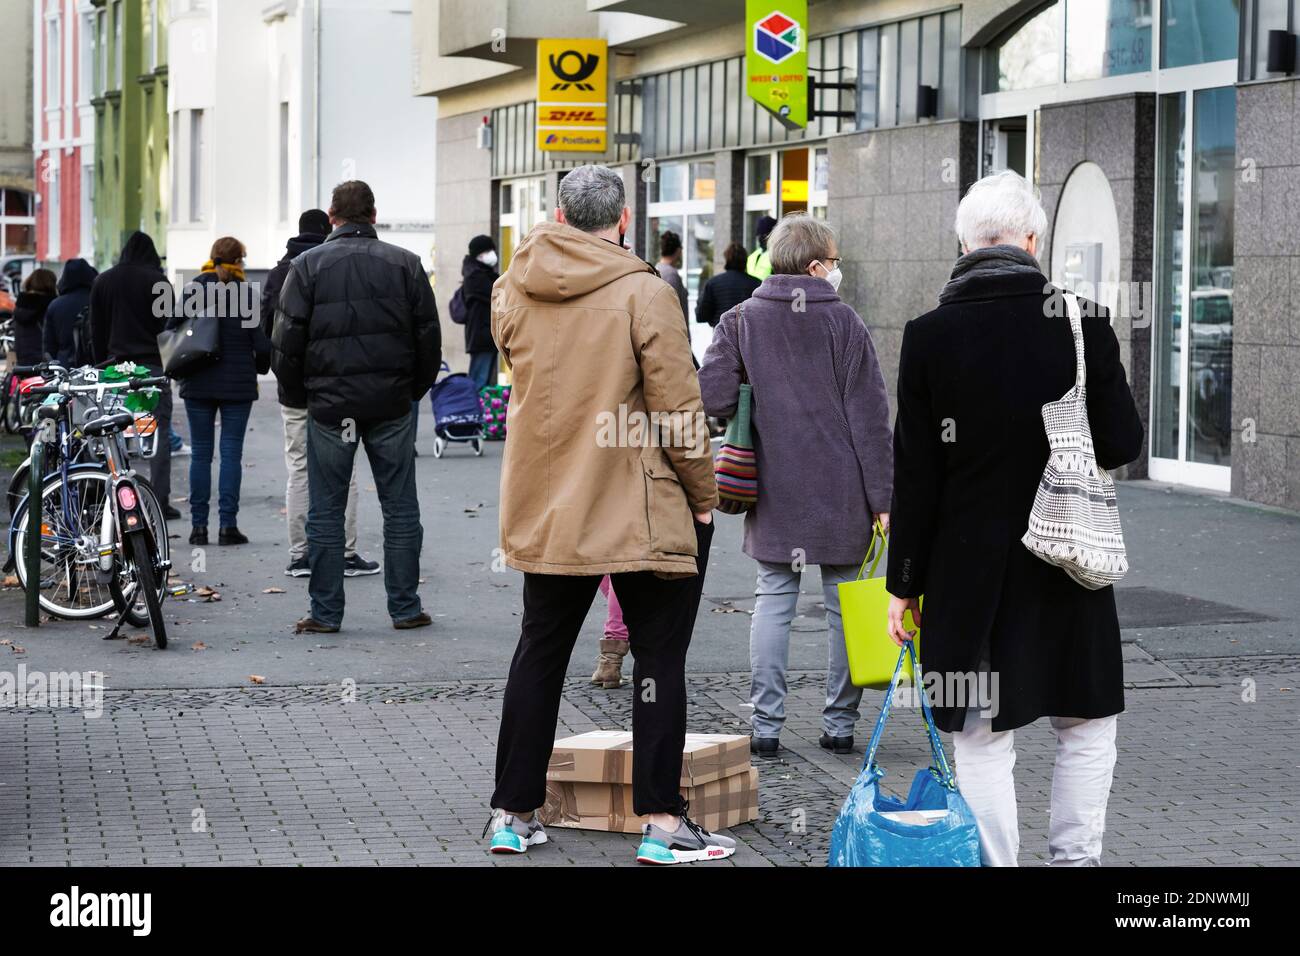 Dortmund, Allemagne, 18 décembre 2020: Les clients attendent sur le trottoir devant une succursale de Deutsche Post / DHL à Dortmund. En raison des restrictions du deuxième verrouillage de la pandémie de corona, seuls 3 clients sont autorisés à rester dans cette succursale en même temps. Banque D'Images